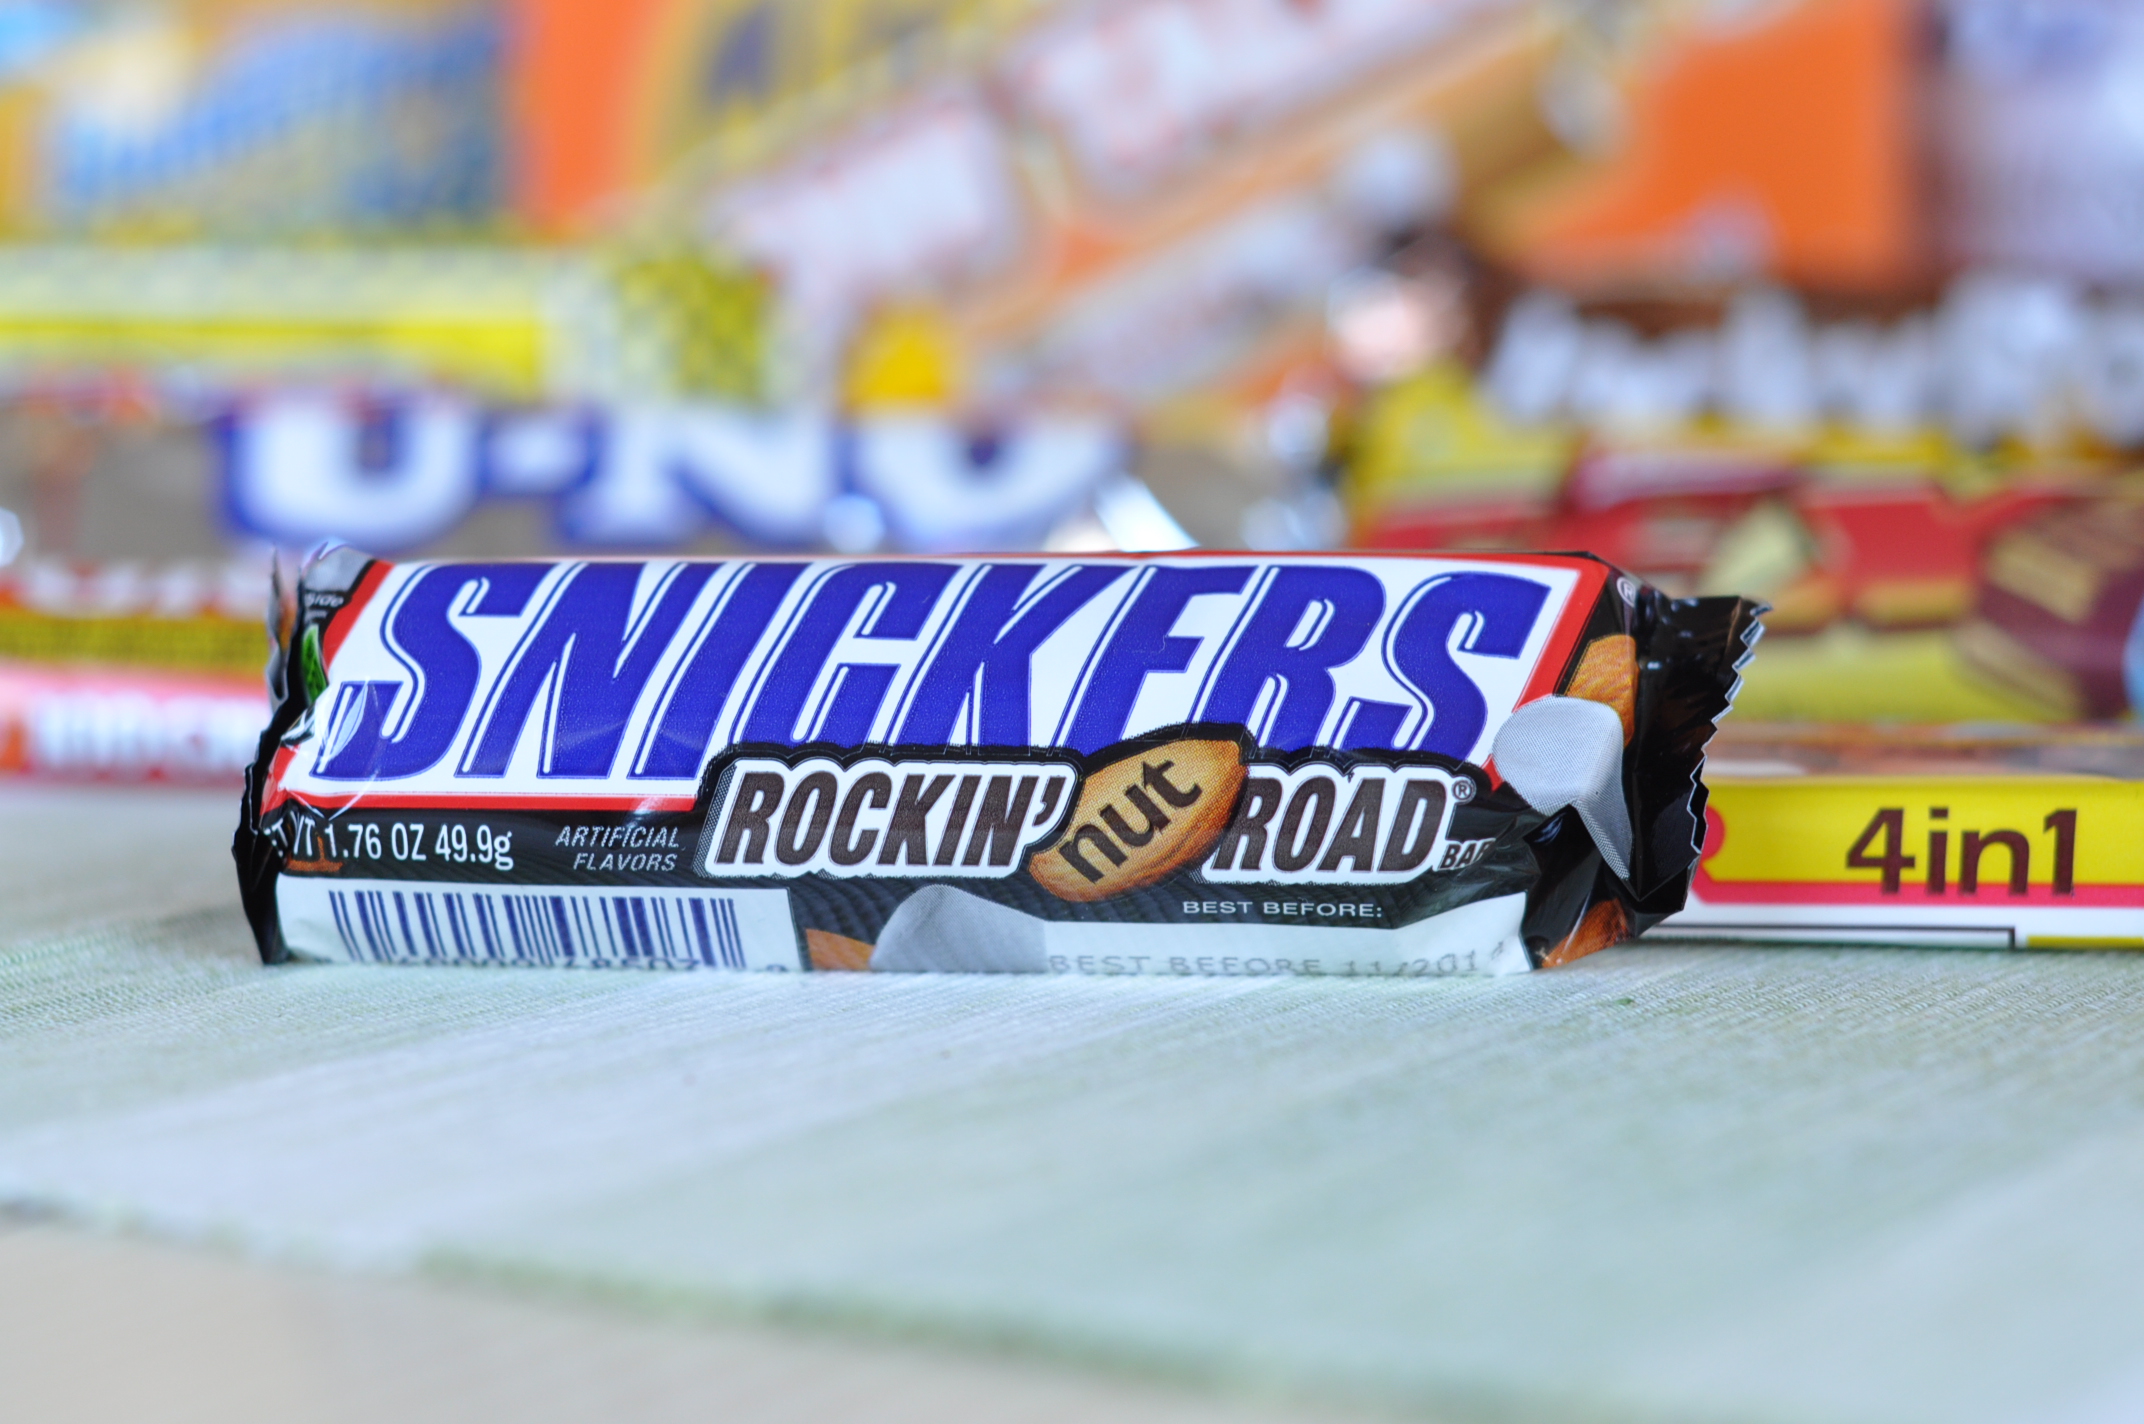 Snickers Rockin Nut Road